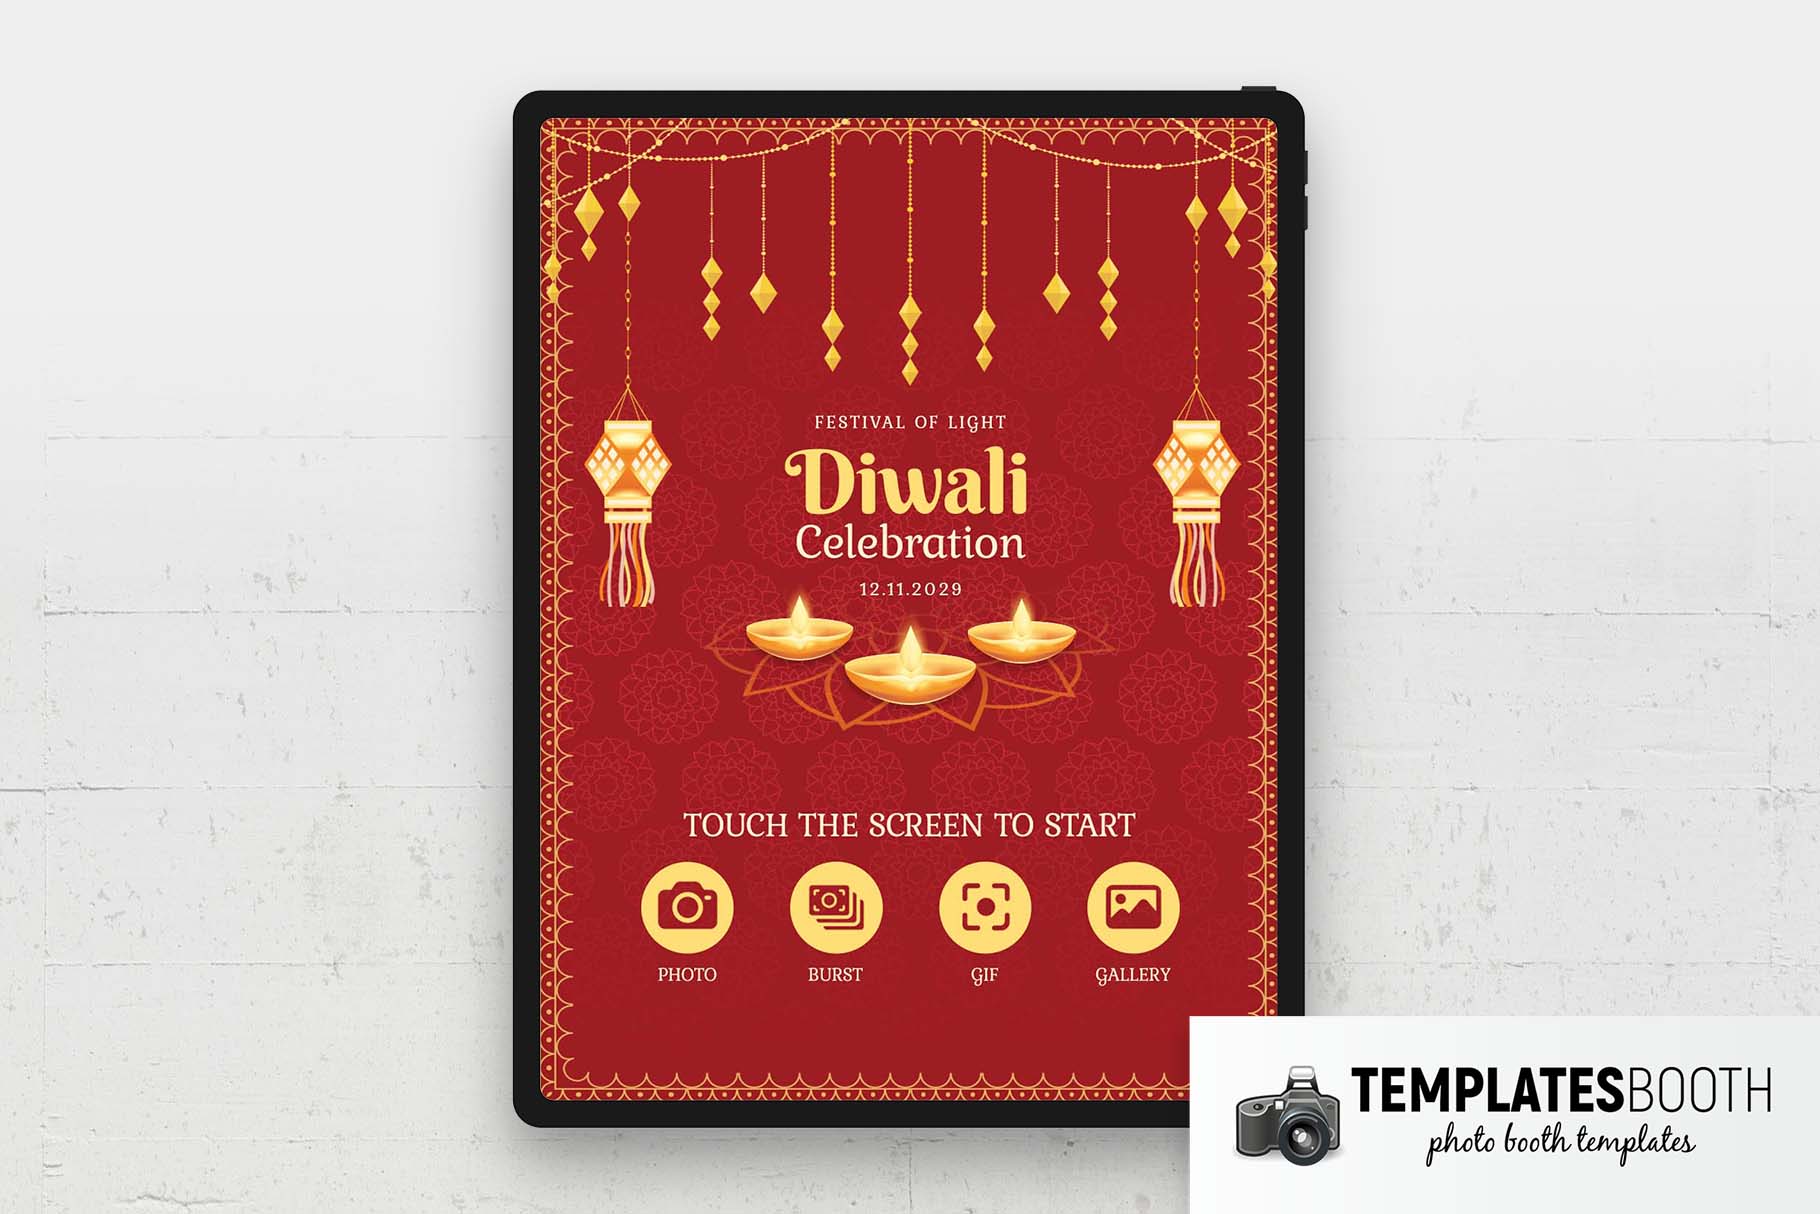 Écran de bienvenue pour le festival Diwali Photo Booth